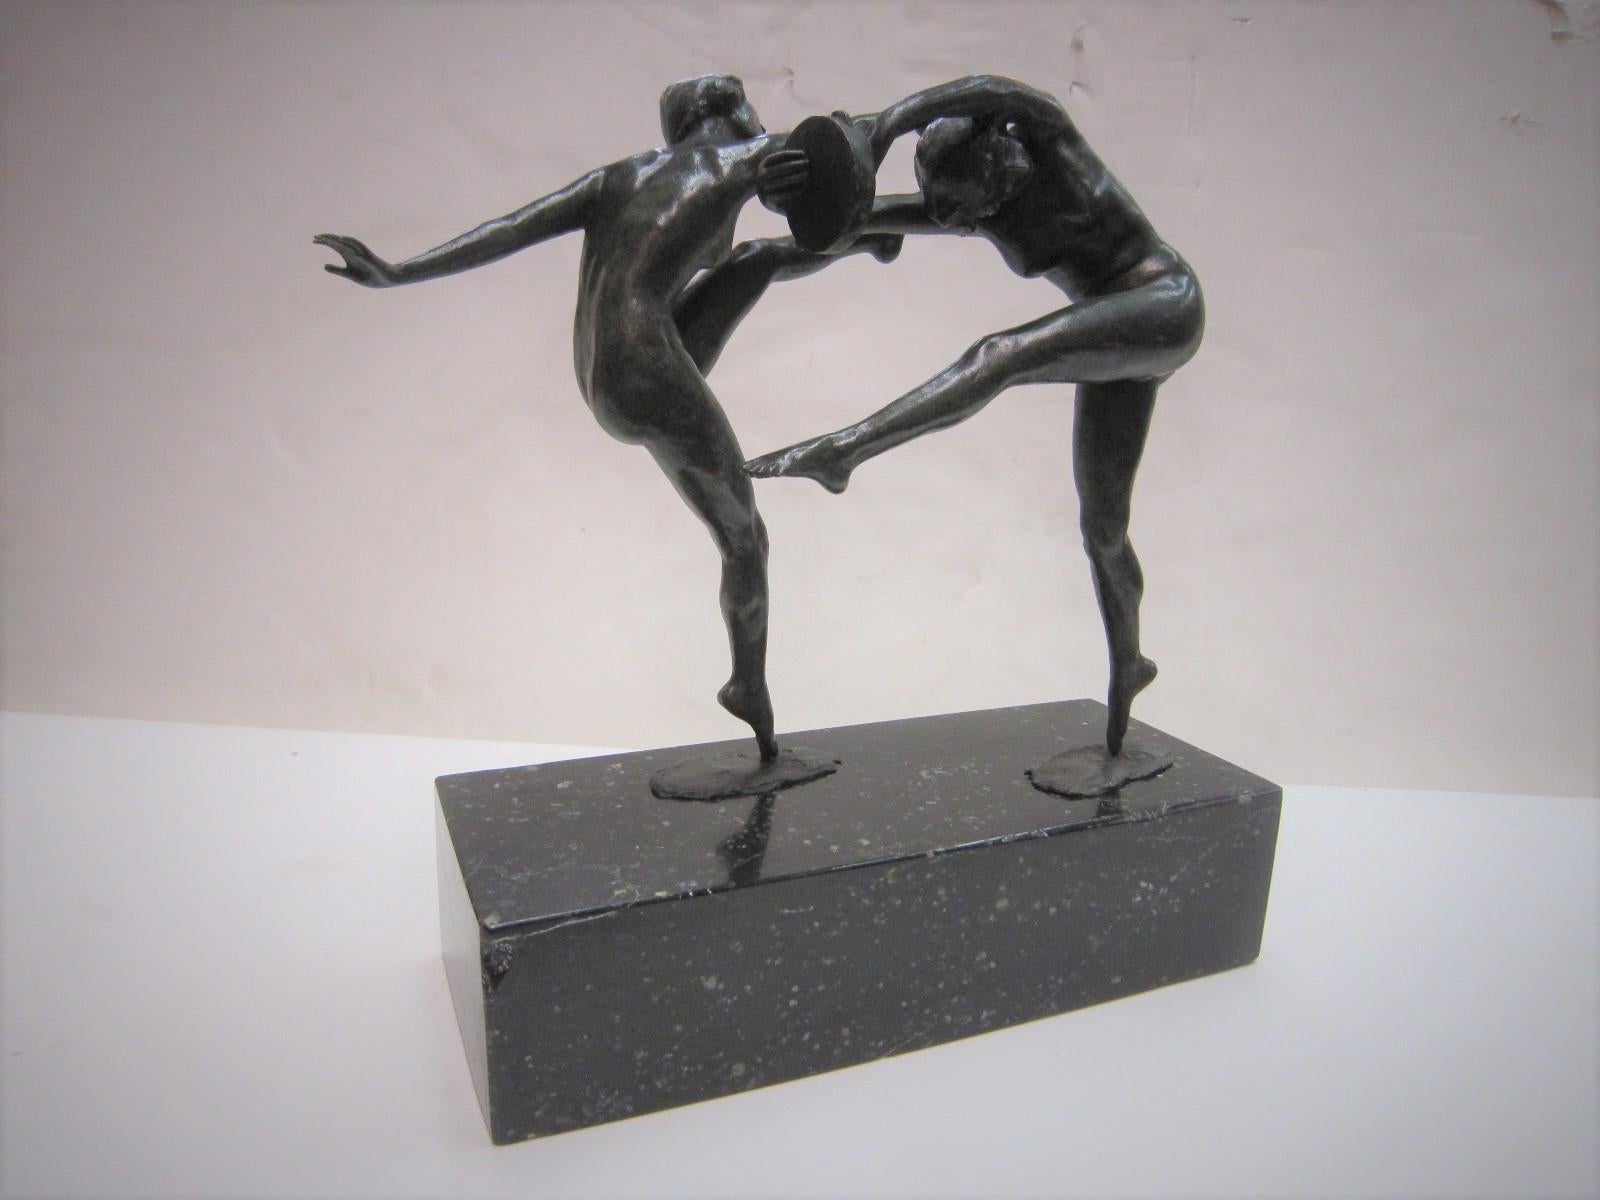 1925 French Art Deco Bronze Sculpture of Dancers Signed Paul de Boulogne  1